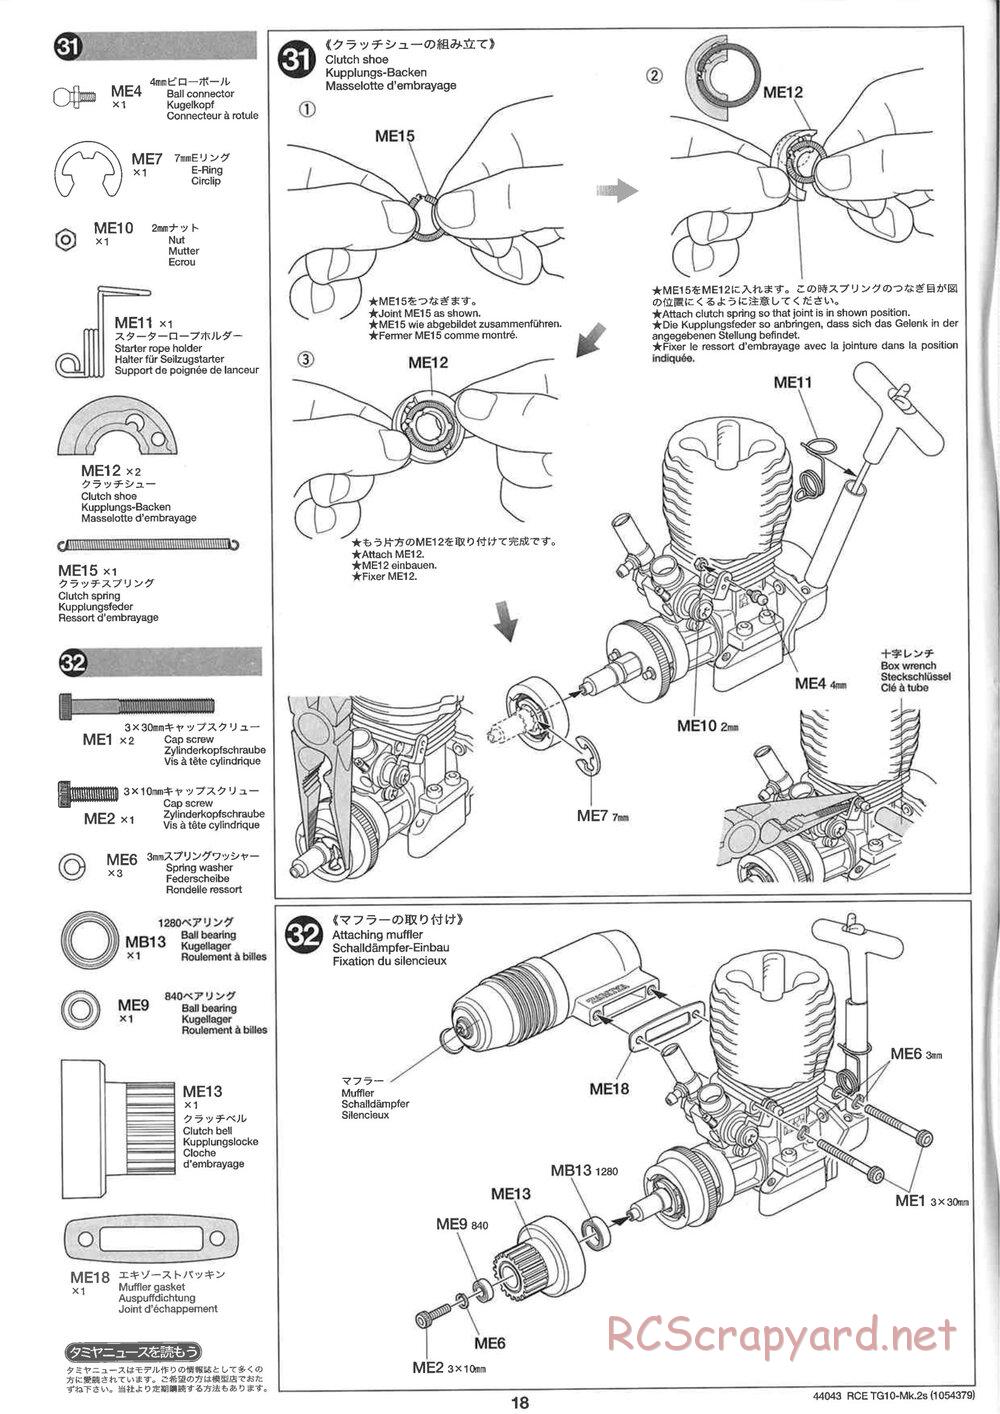 Tamiya - TG10 Mk.2s Chassis - Manual - Page 19